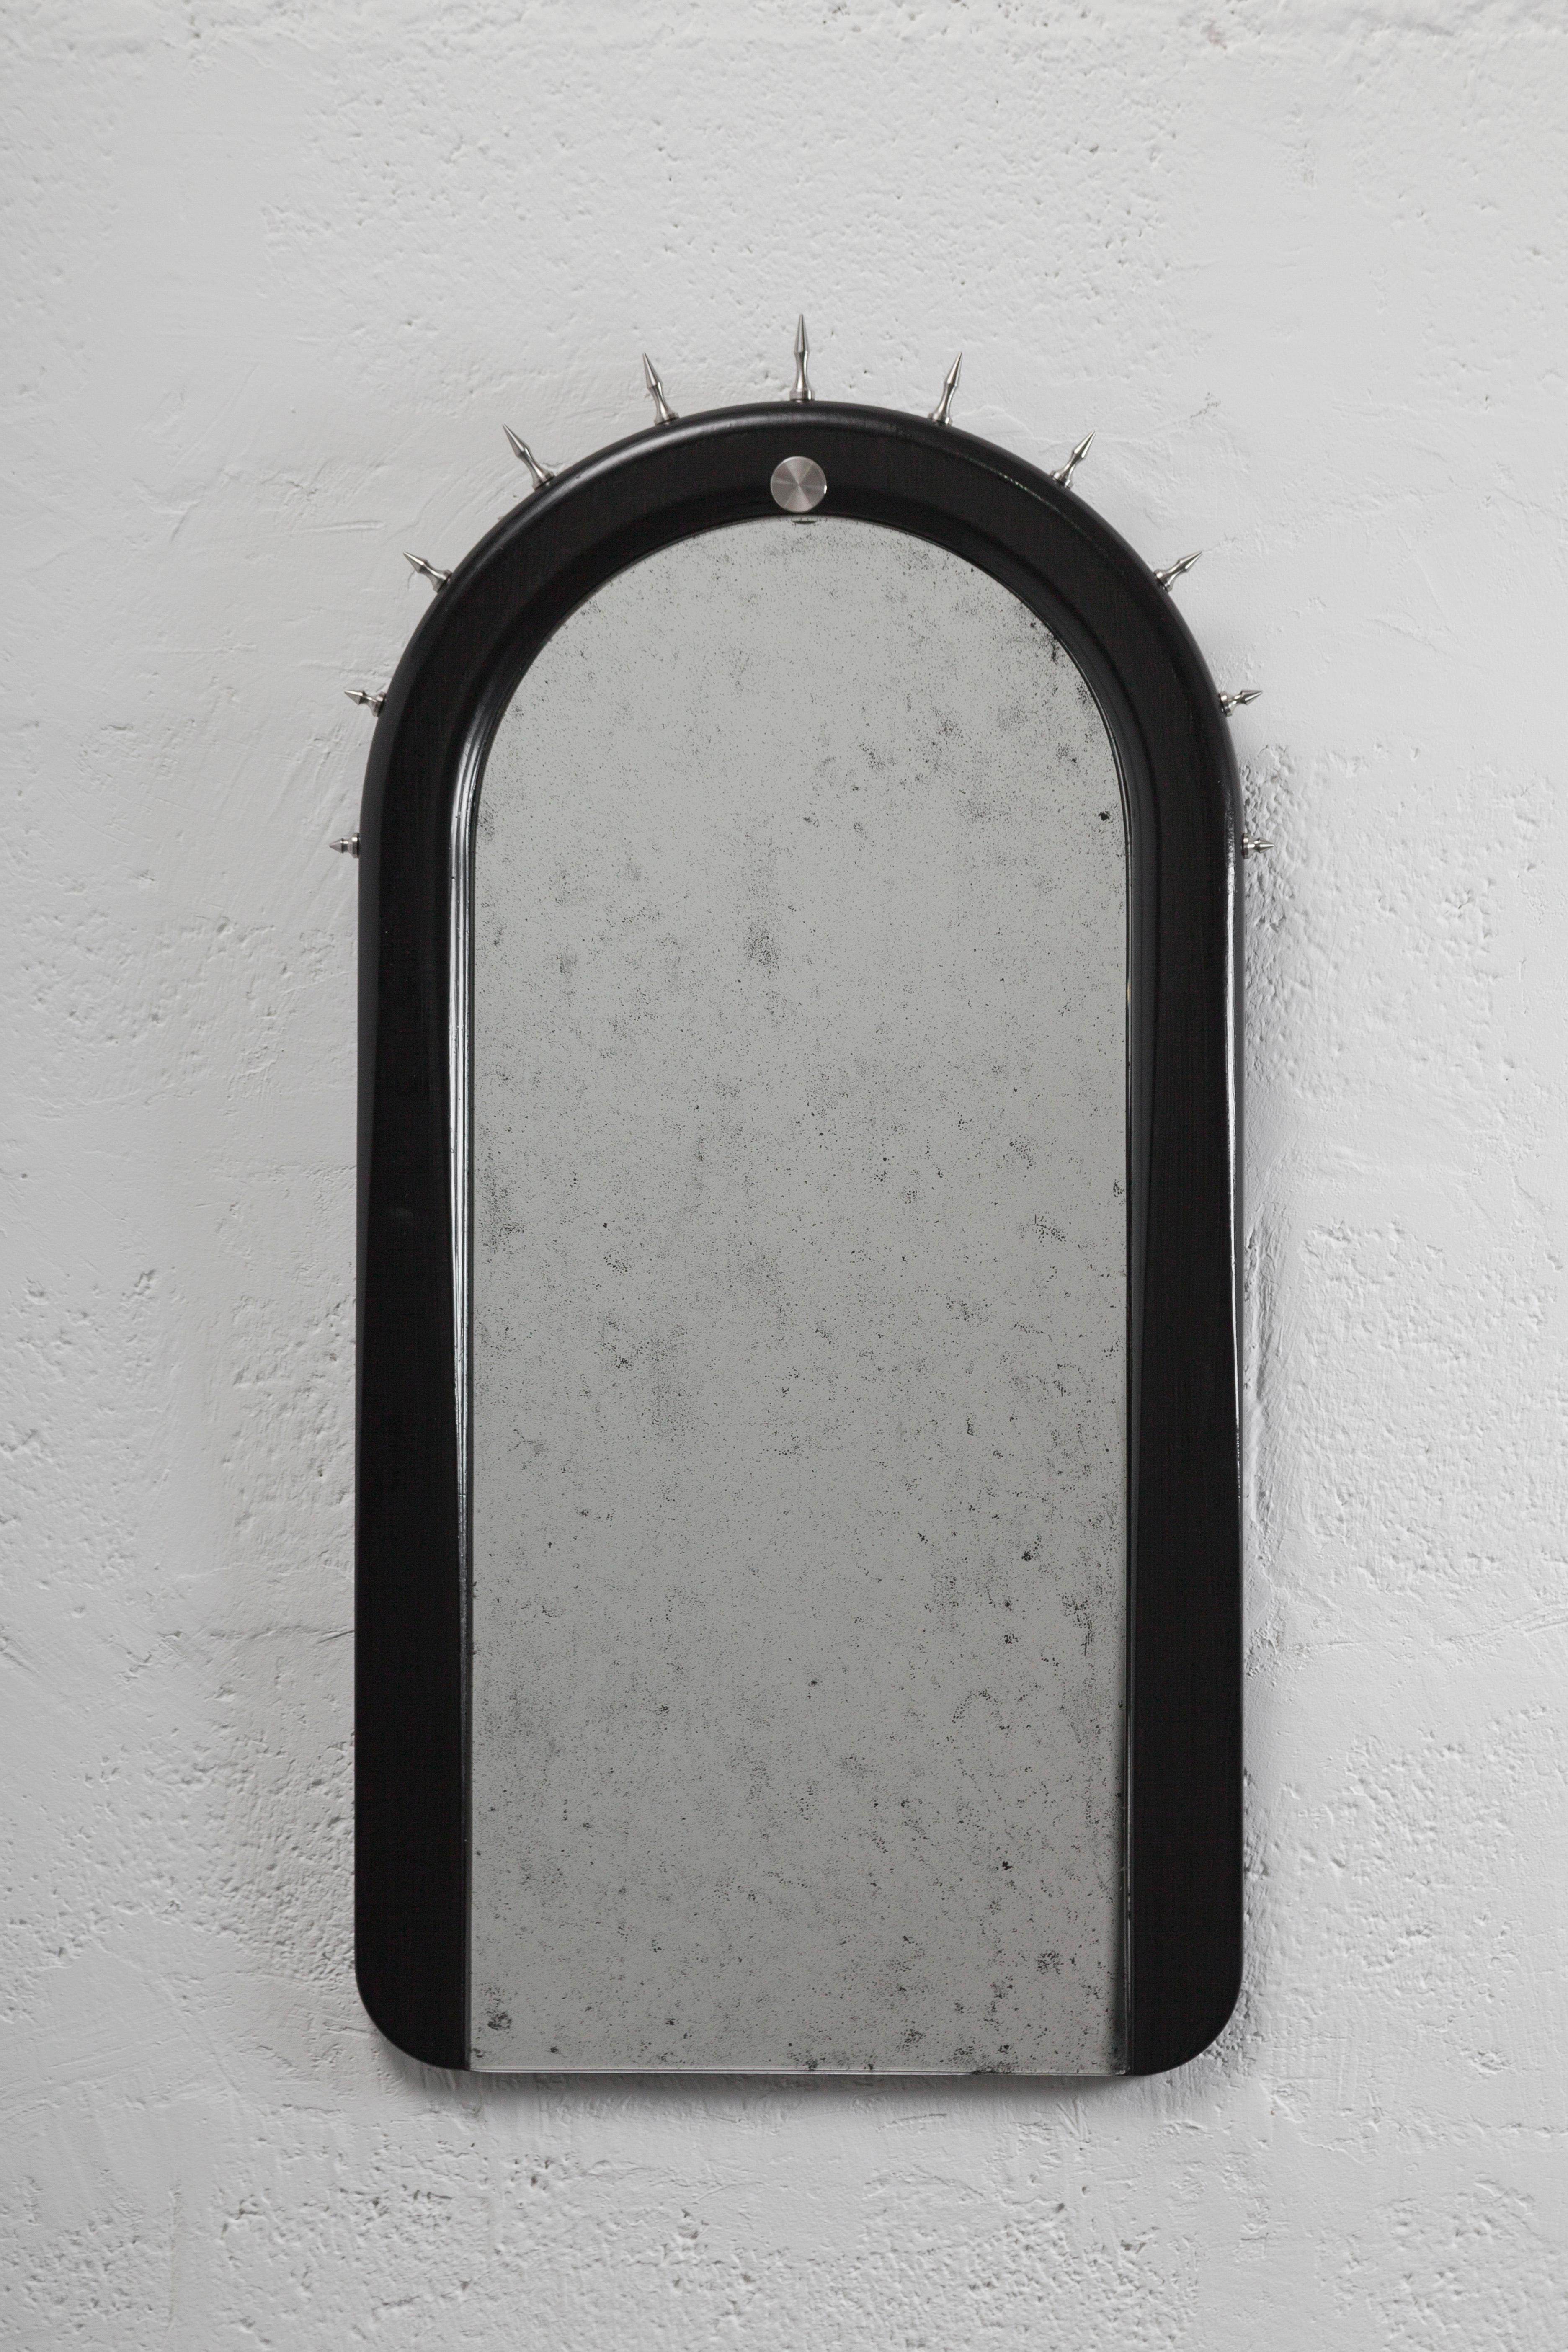 Wandspiegel aus massivem Seike-Holz, naturgeölt, mit antikem Spiegelglas und gedrehten Bronze- oder Edelstahlbeschlägen.

SITIERA ist die zweite hochwertige Wohnmöbelkollektion von ANDEAN. Die Ausstellung konzentriert sich auf Sitzmöbel und